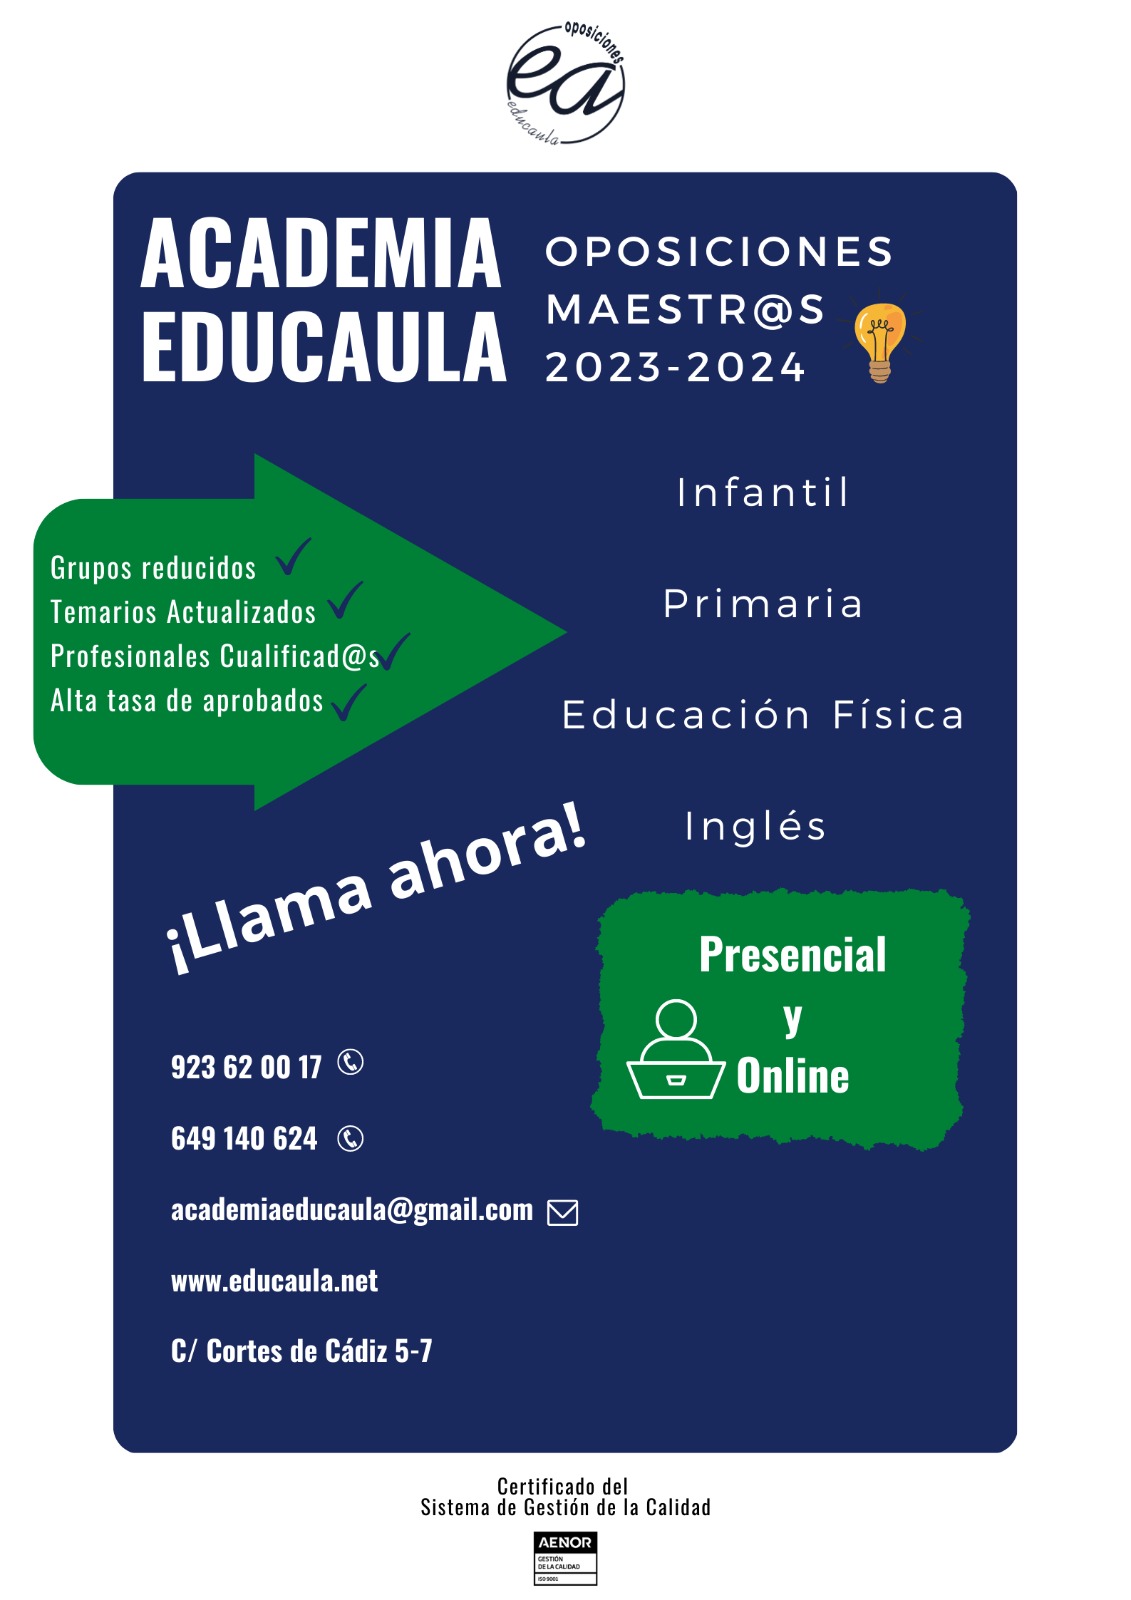 EDUCAULA prepara oposiciones de maestros: infantil, primaria, educación física e inglés.